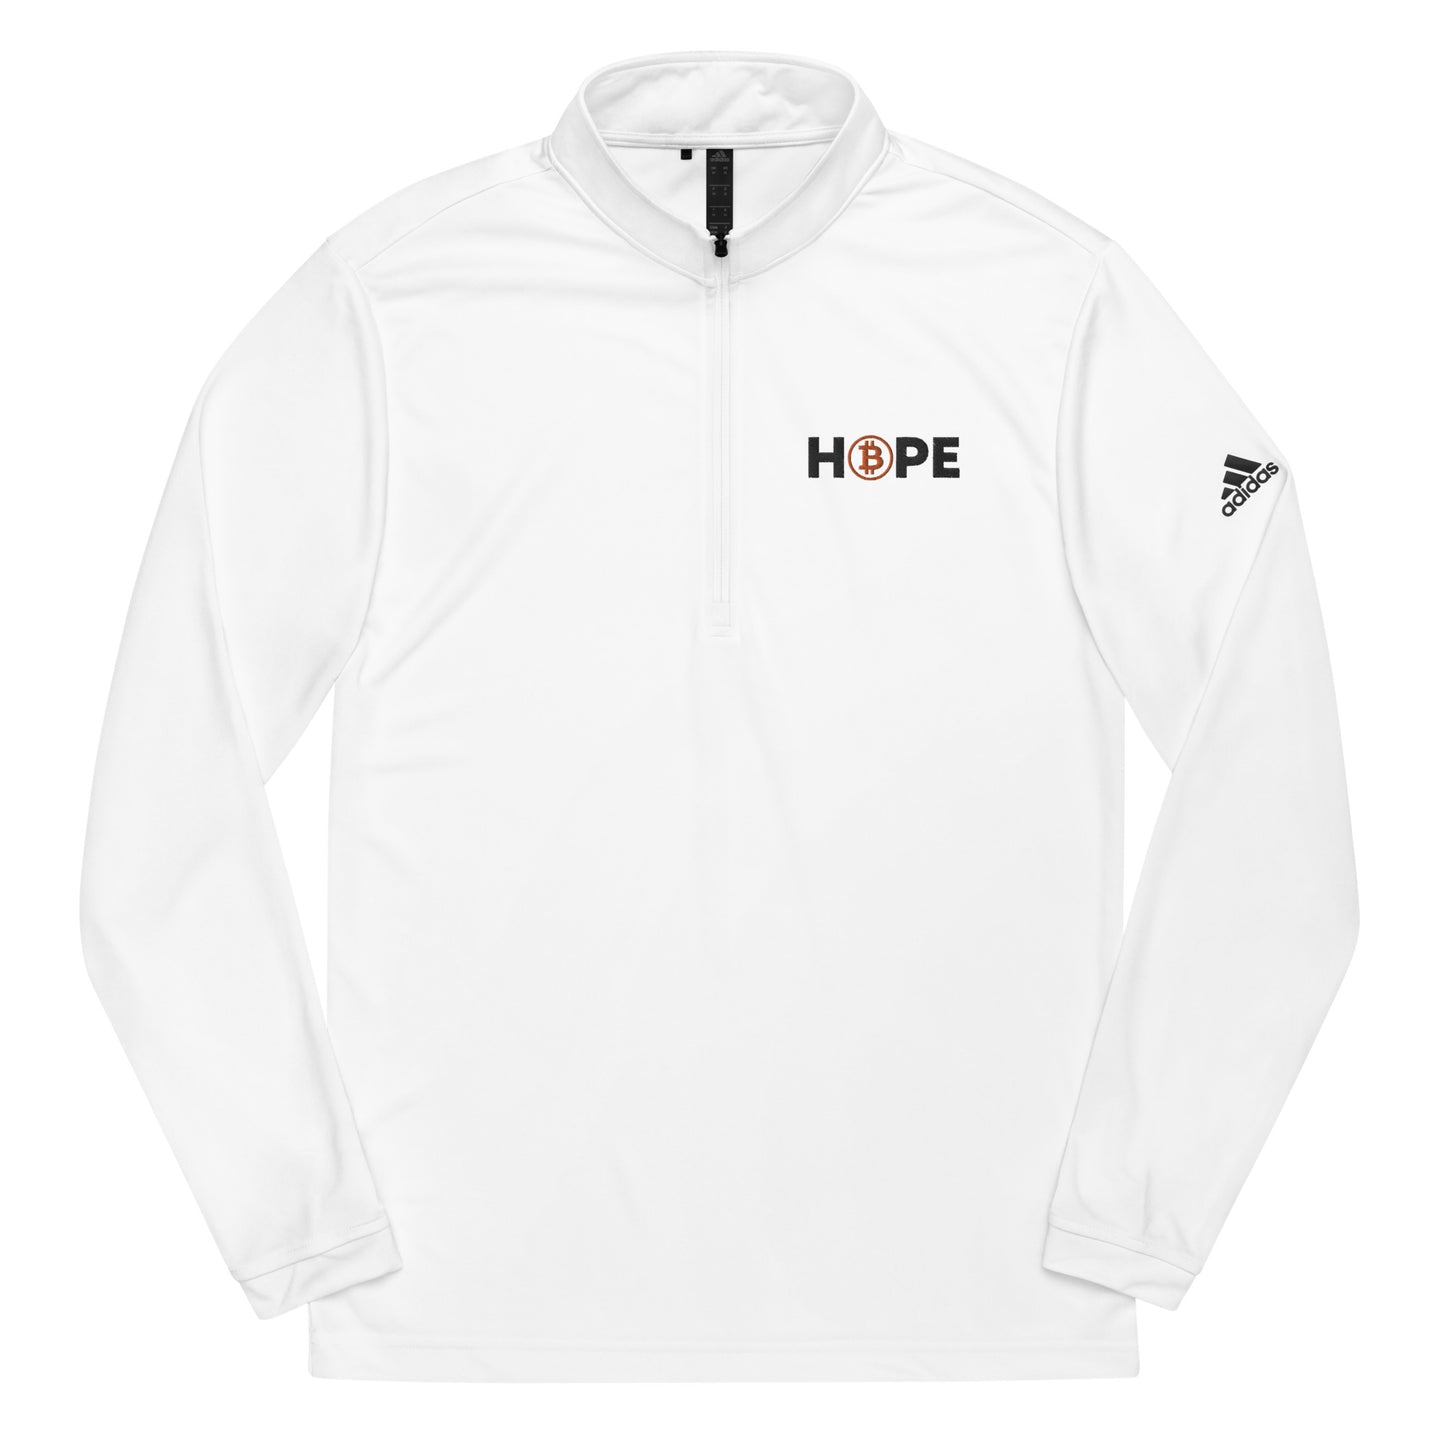 Hope White Quarter zip pullover